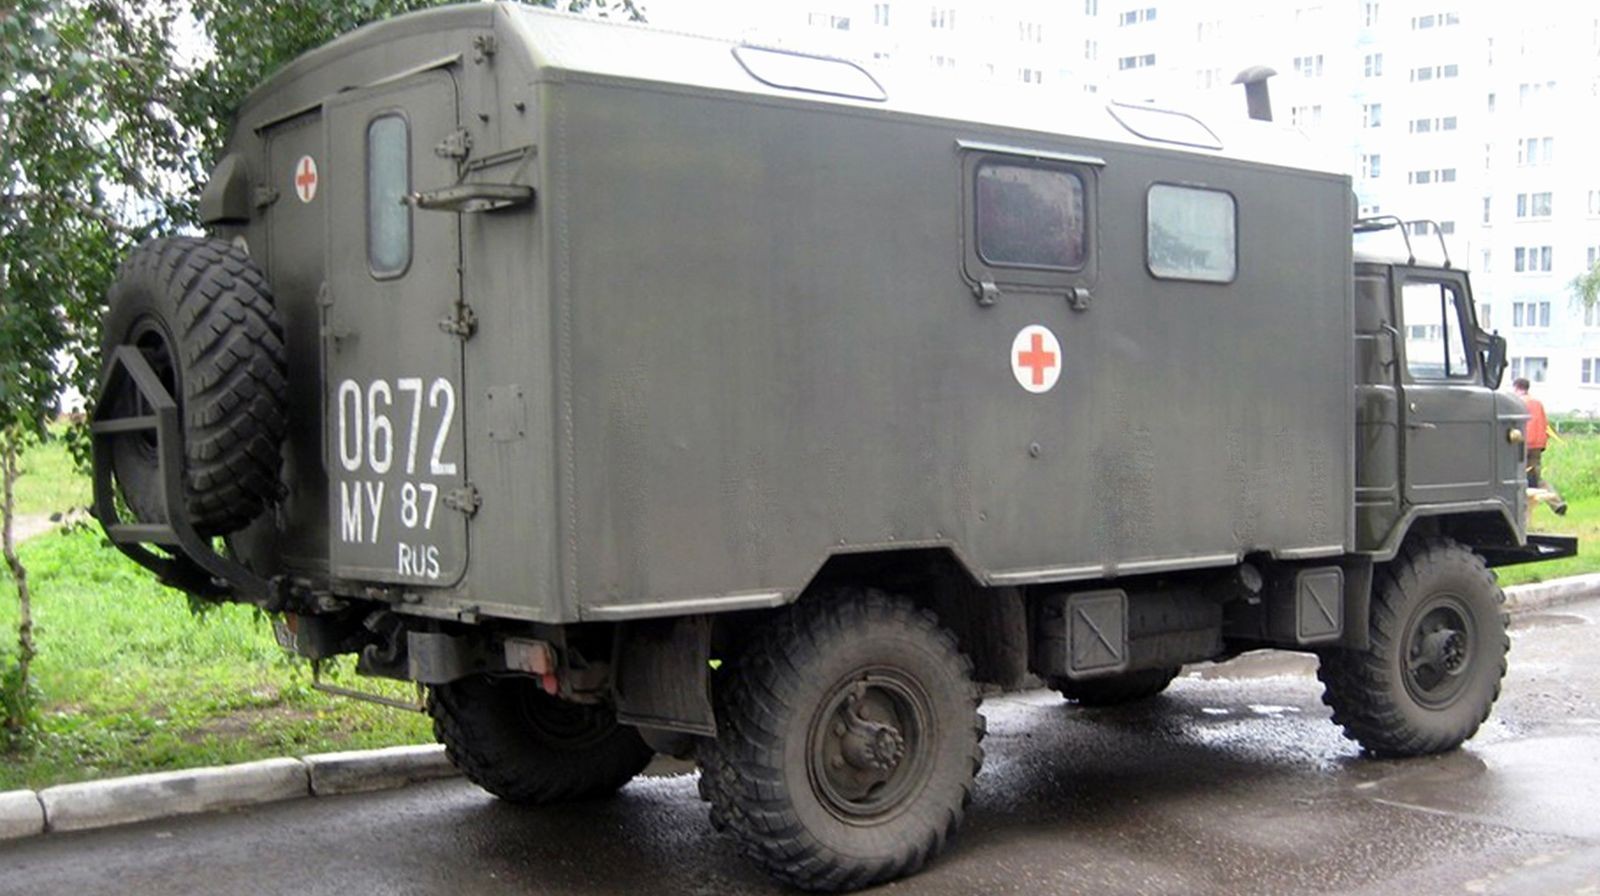 Автомобили из зоны риска: незаметные санитарные машины Советских вооруженных сил